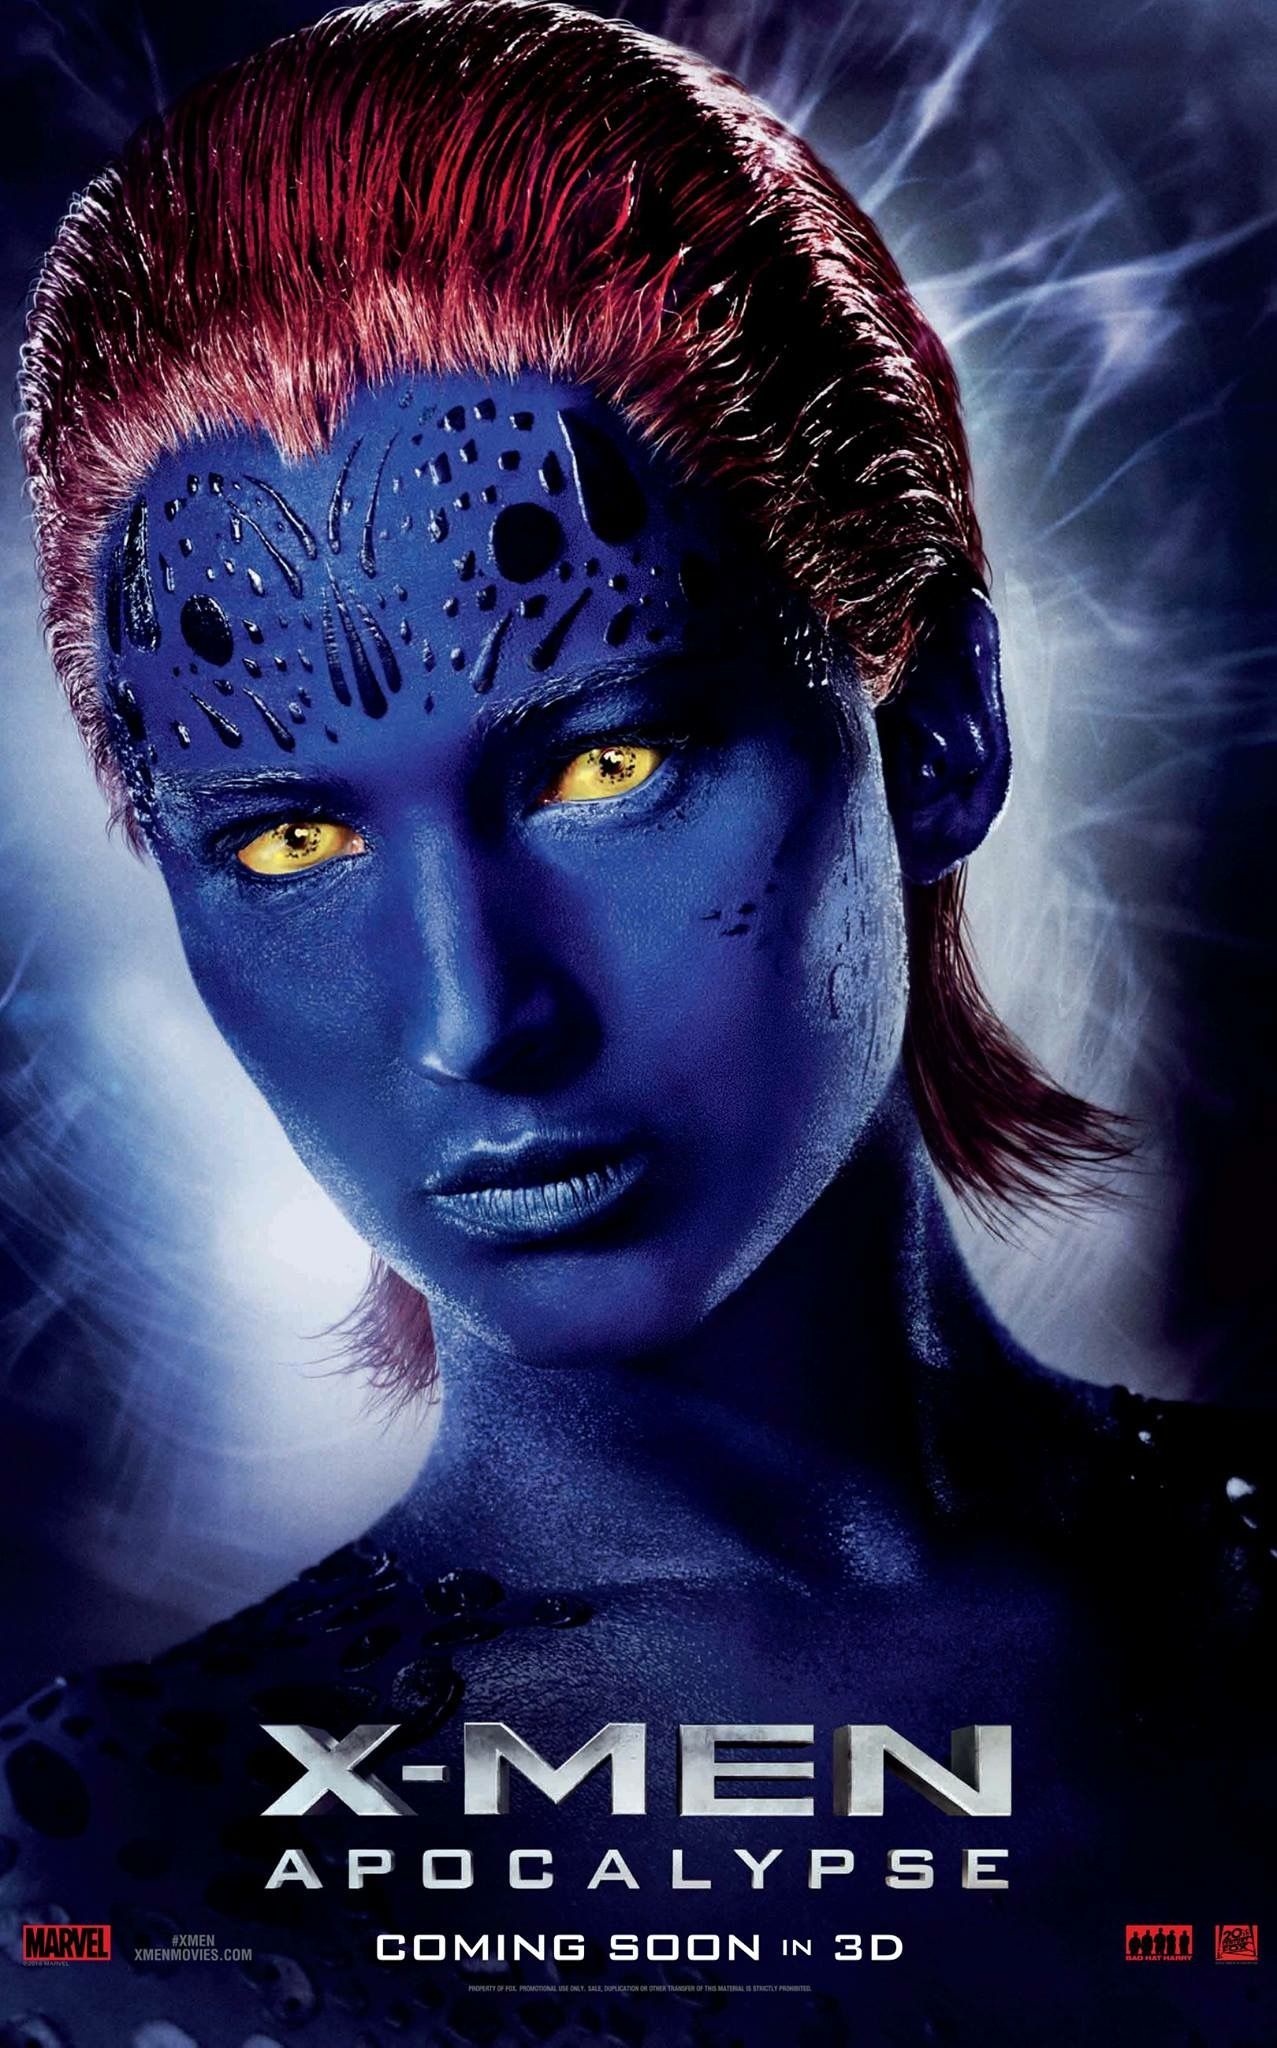 X-Men: Apocalypse Mystique Character Poster